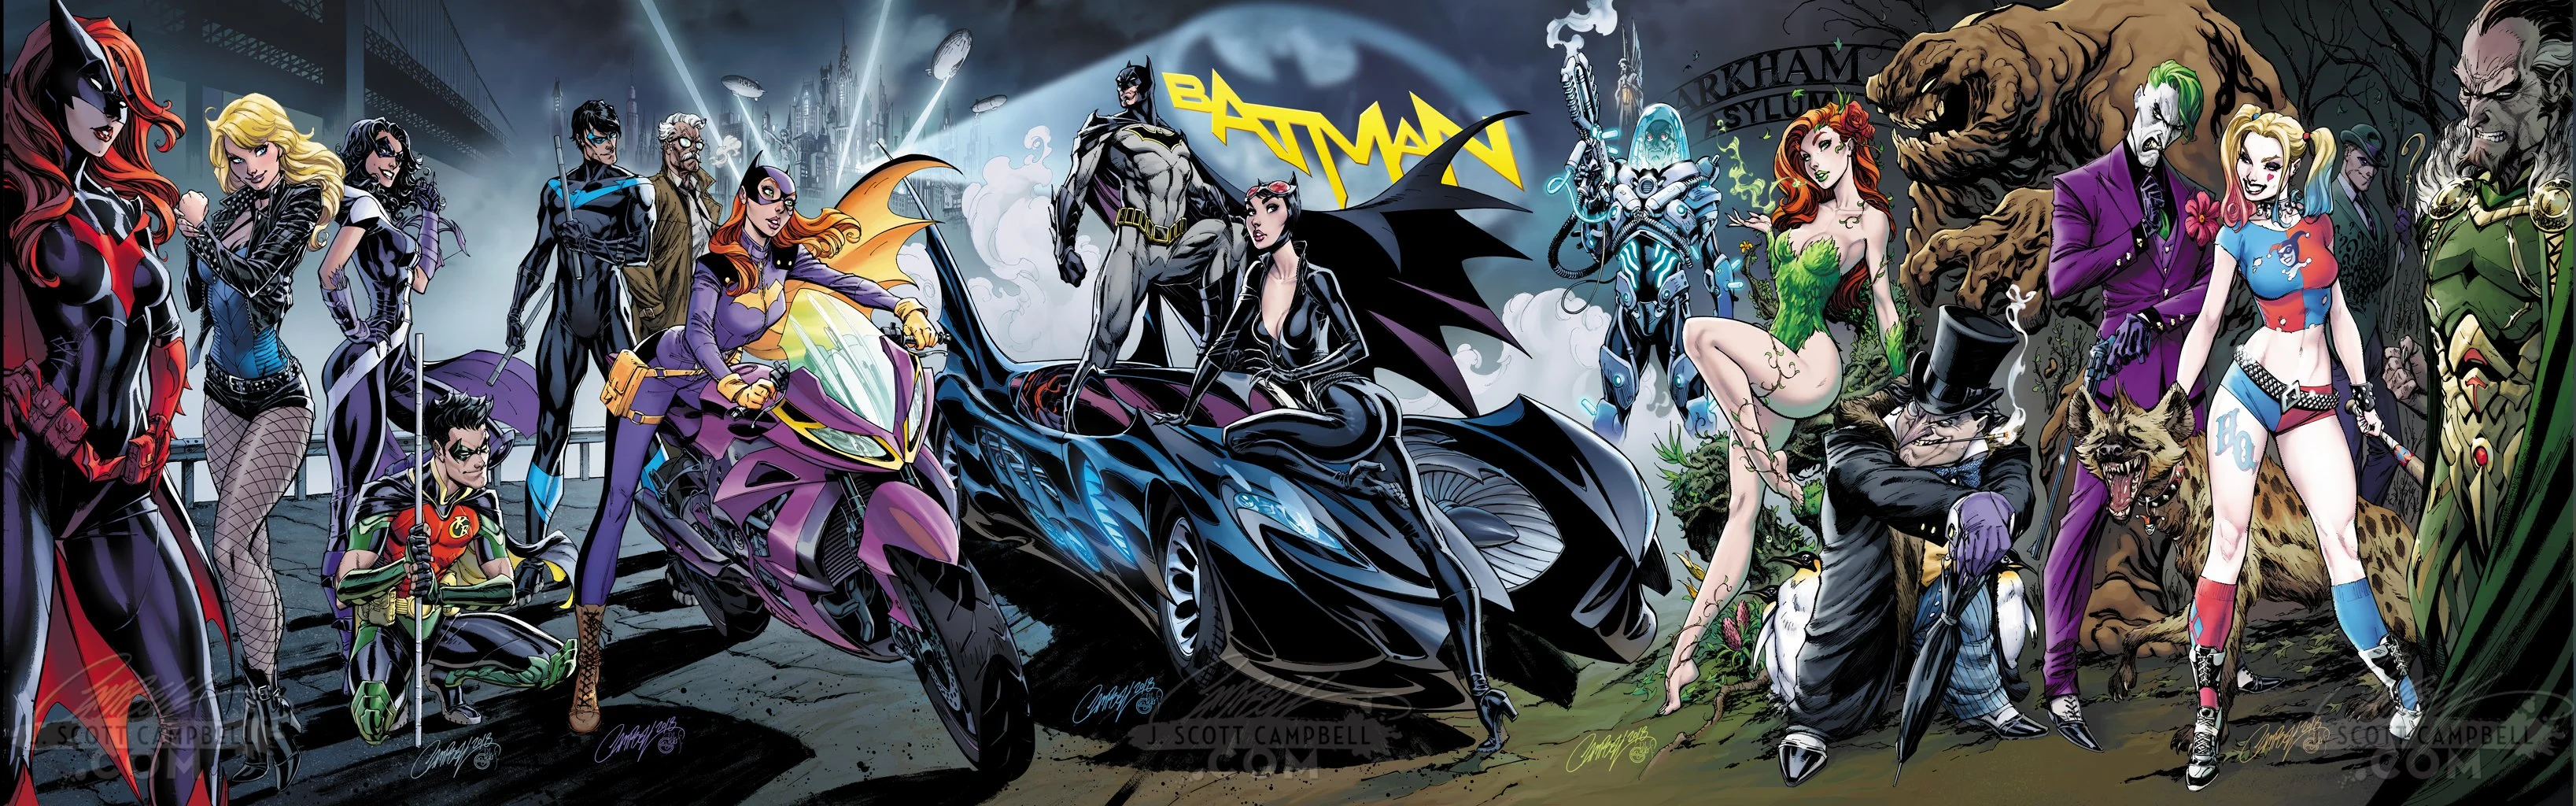 Юбилейный Batman vol.3 #50 выйдет уже 4 июля 2018 года. Издательство DC выпустило больше пятидесяти обложек от различных художников. На них, помимо будущих молодоженов, можно увидеть Джокера, Бэт-семью и даже других злодеев из окружения Бэтмена. В этом материале мы собрали юбилейные обложки.